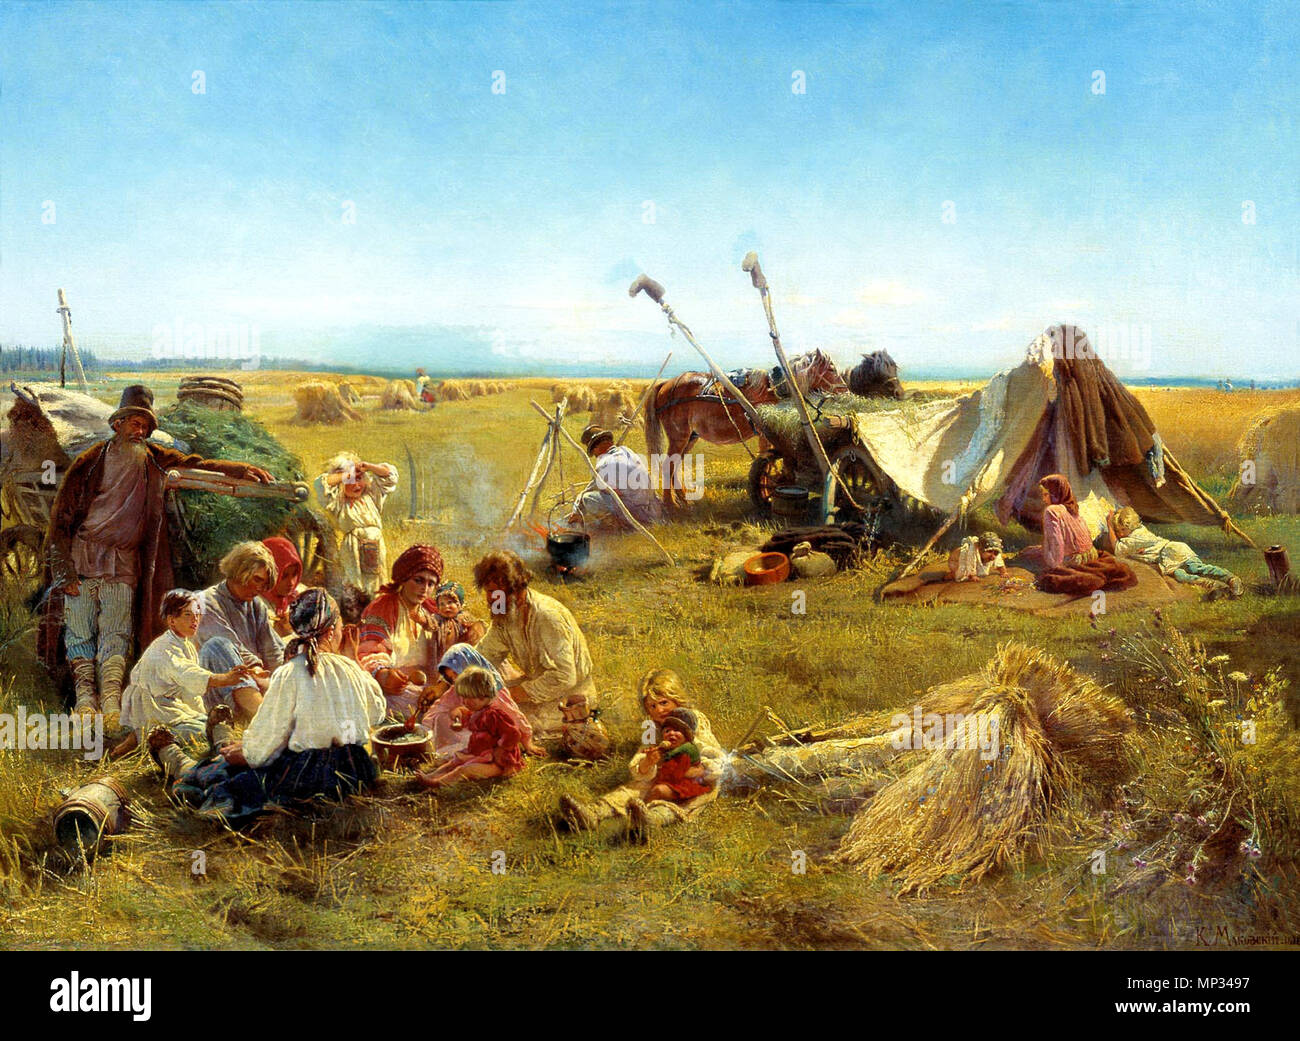 Цифровая репродукция этой картины находится в интернет-галерее Http://gallerix.ru 1299 Маковский Крестьянский - обед - в - поле Stockfoto